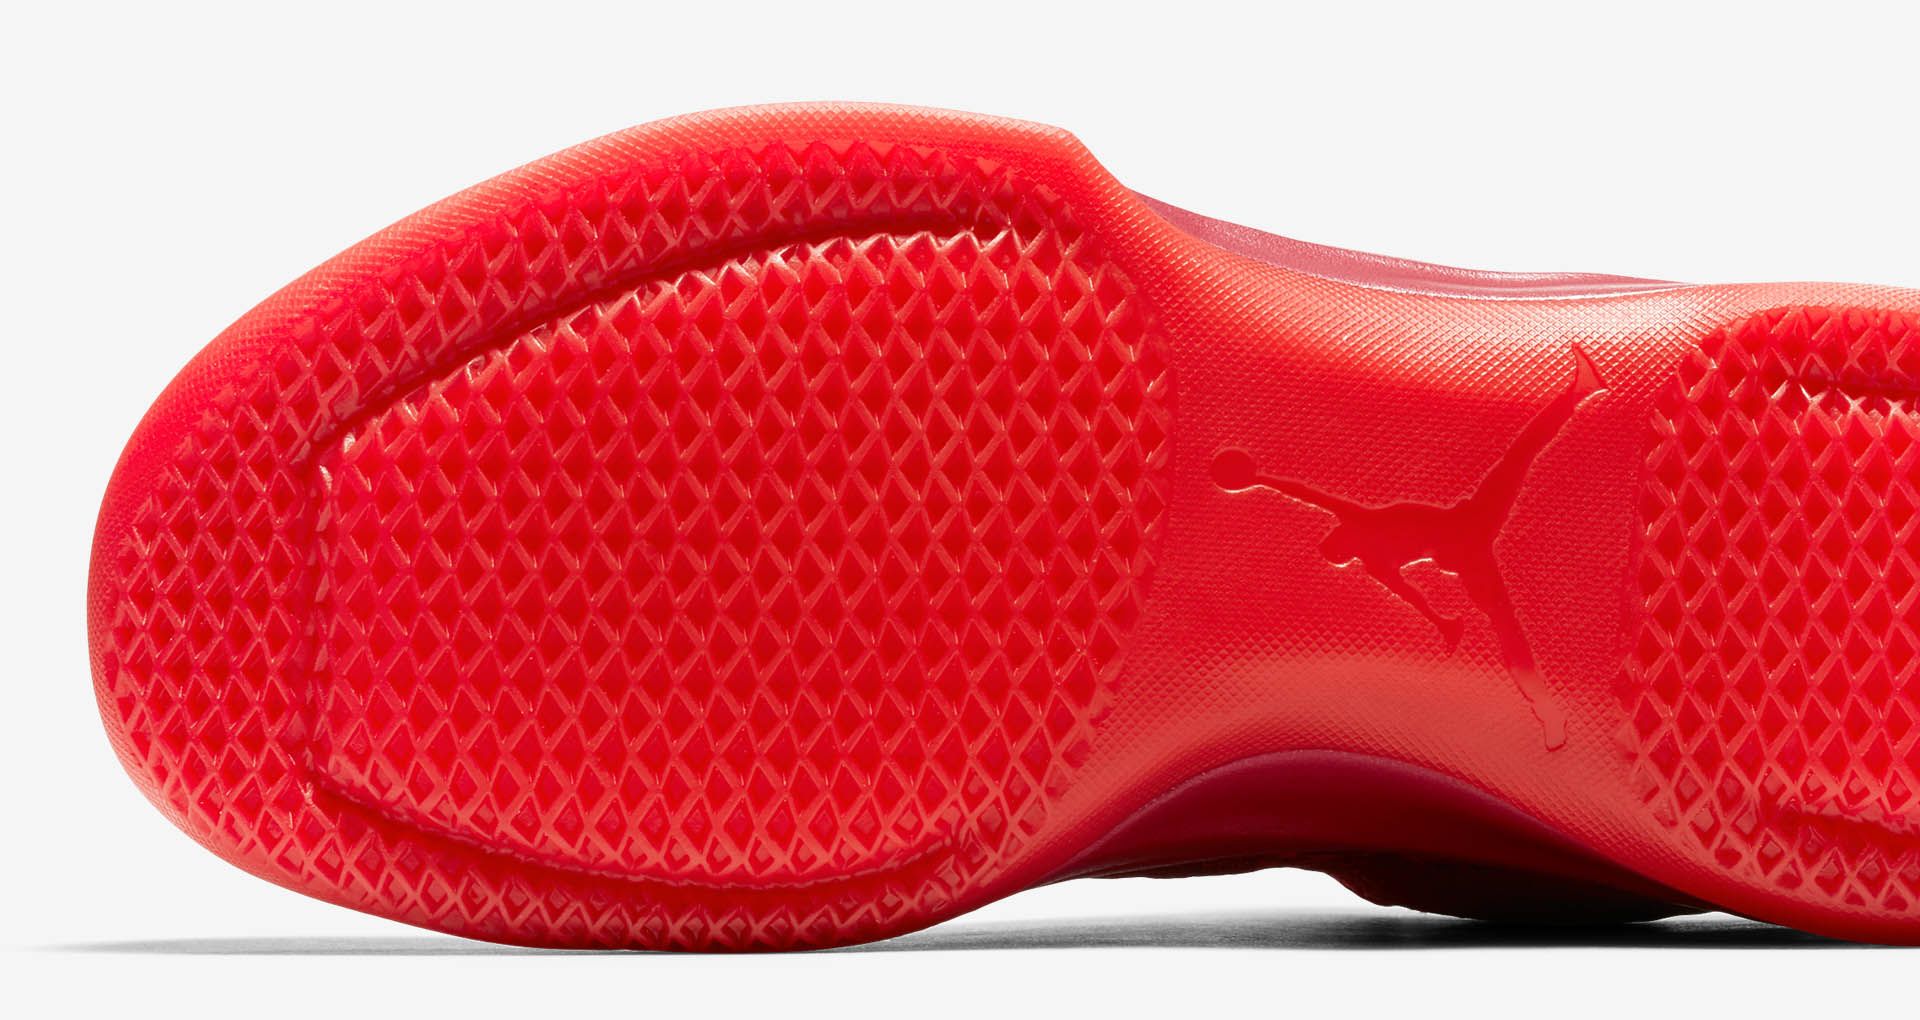 エア ジョーダン 31 LOW 'Gym Red & Action Red' 発売日. Nike SNKRS JP